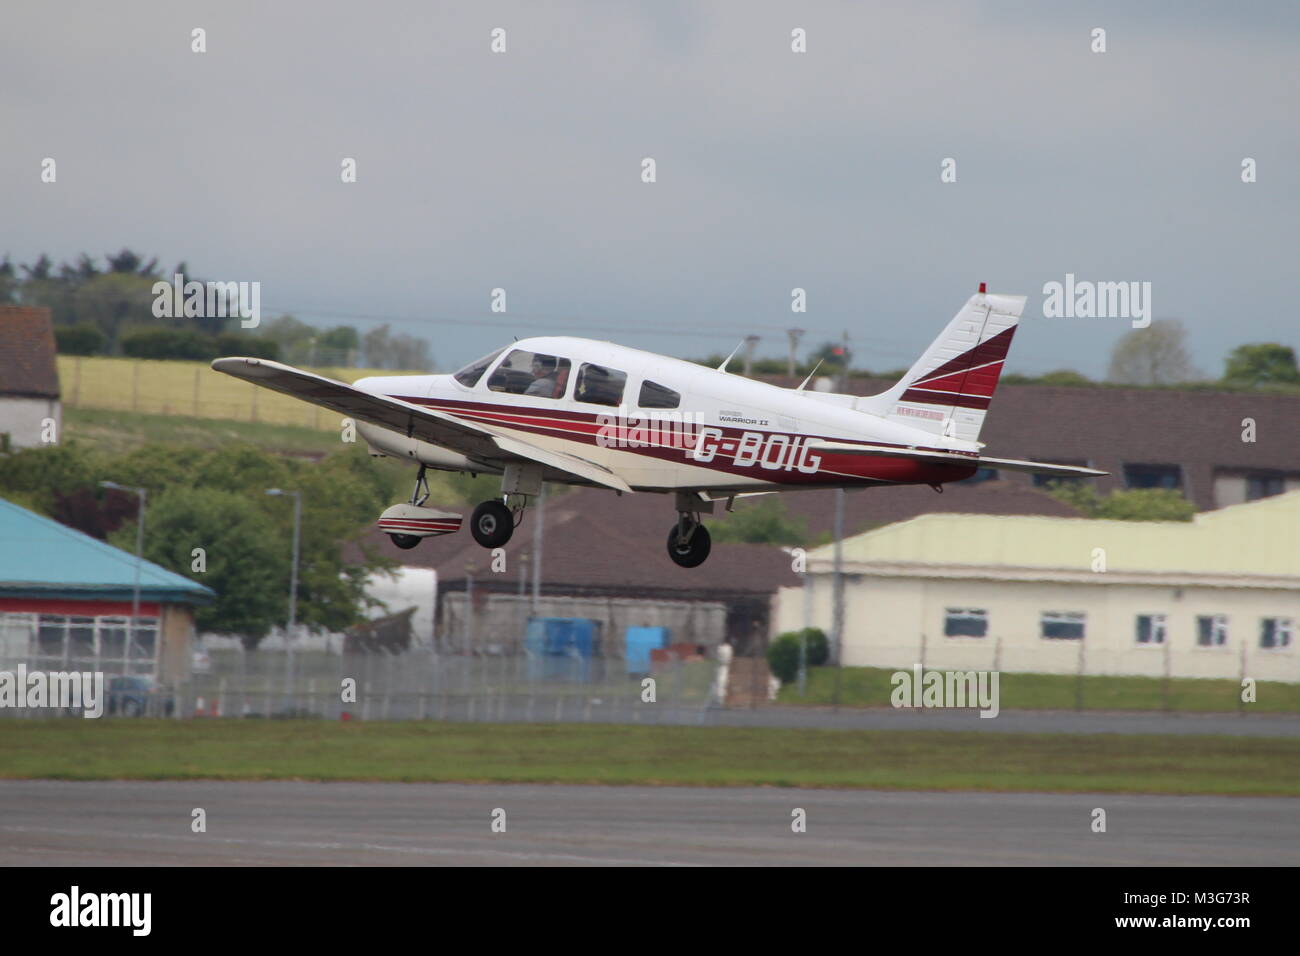 G-BOIG, un Piper PA-28-161 Warrior II, au départ de l'aéroport de Prestwick en Ayrshire. Banque D'Images